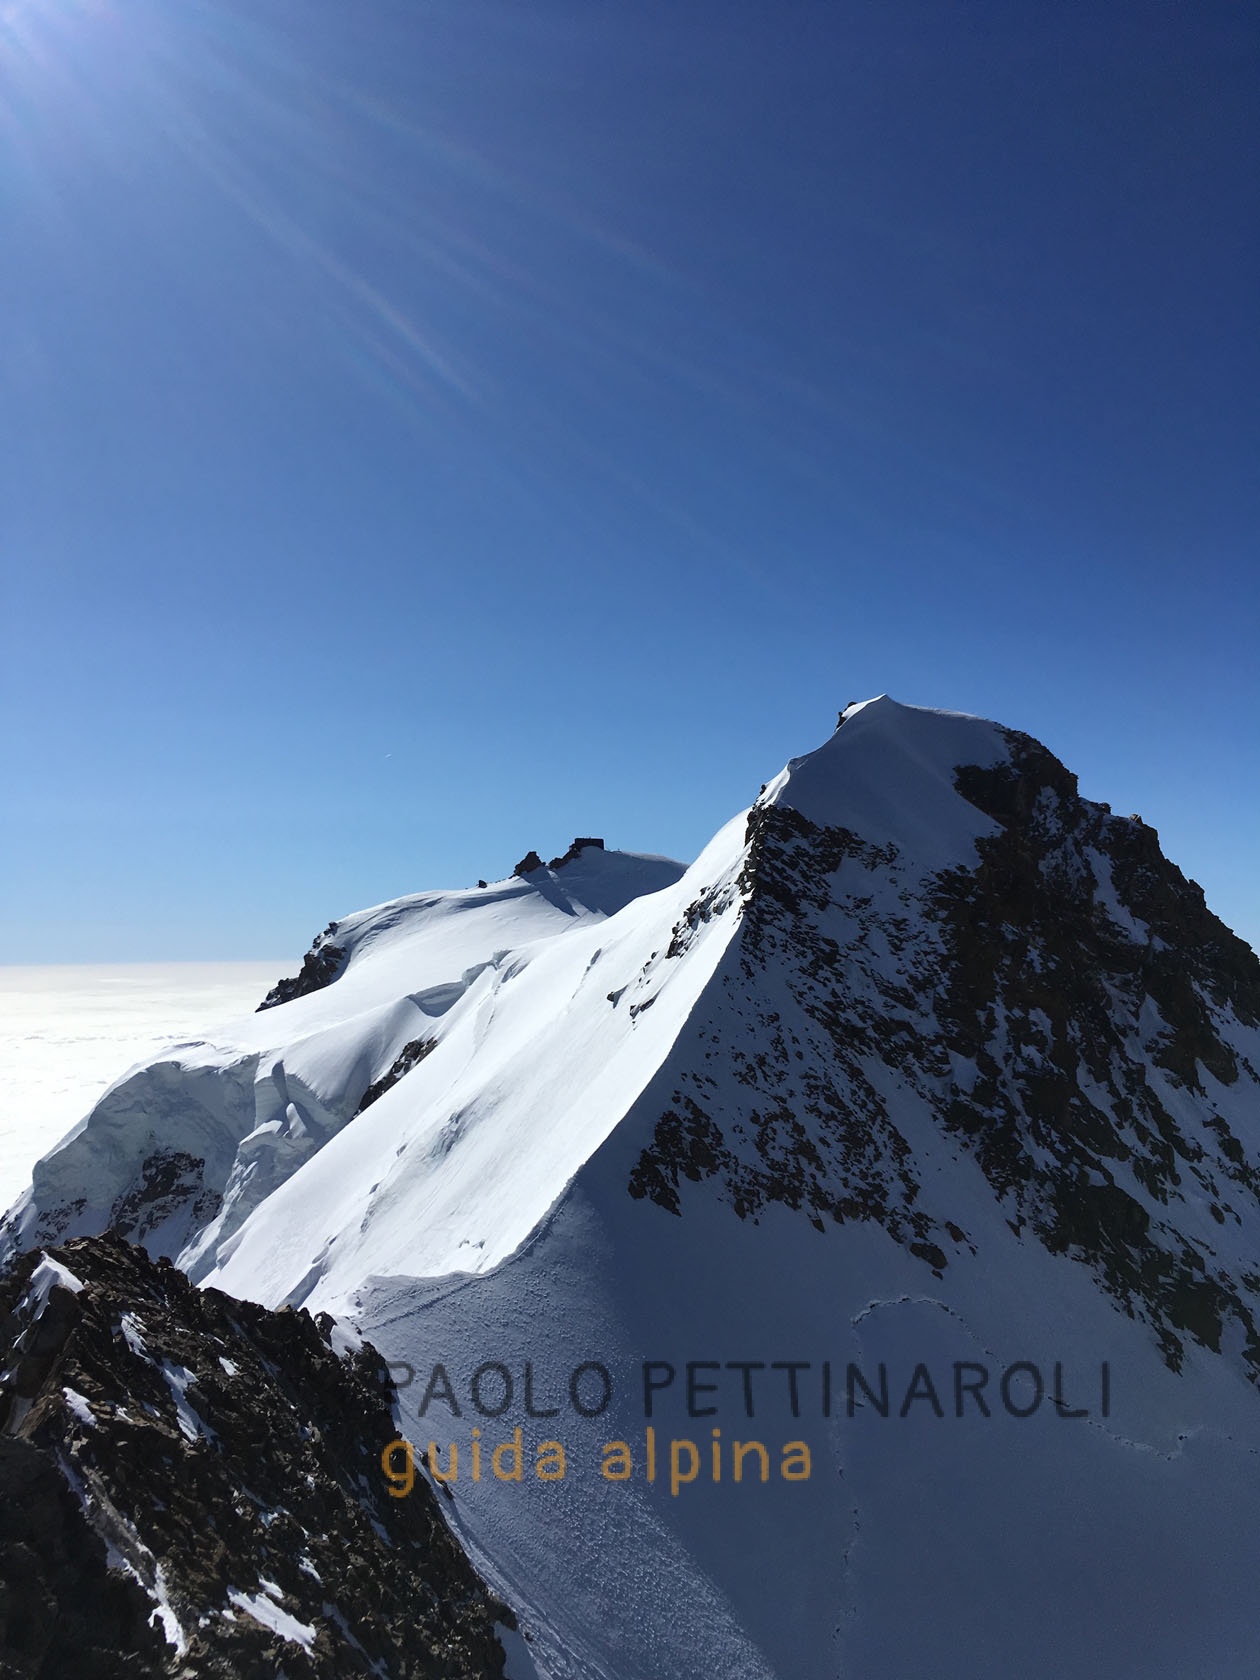 Rey - 2 di 4 - alpinismo_paolo pettinaroli guida alpina